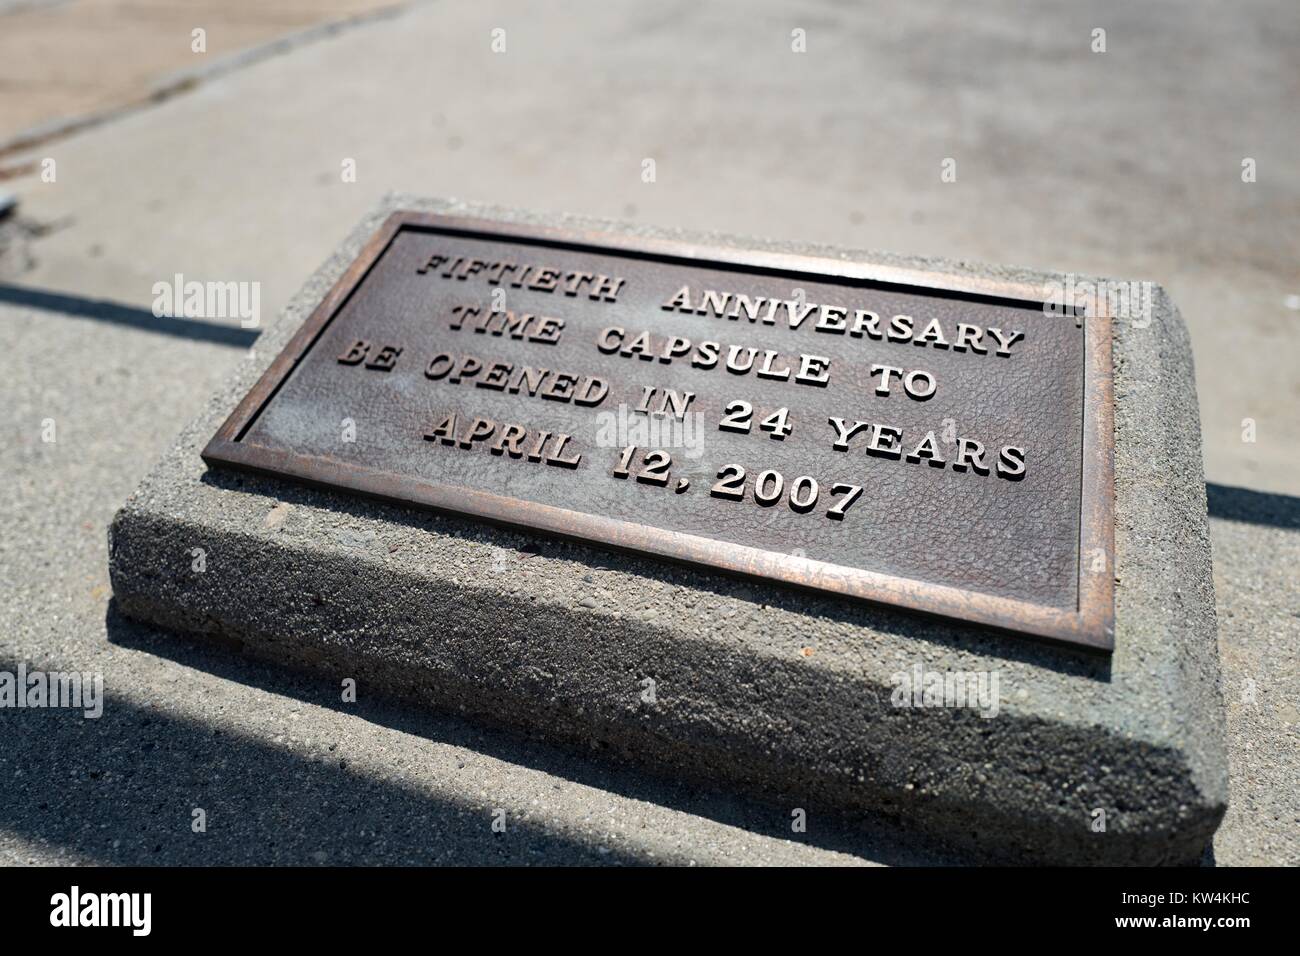 Placa por una cápsula del tiempo que fue enterrada para conmemorar el 50º aniversario de Moffett Field, dentro de la zona segura del Centro de Investigación Ames de la NASA en el Silicon Valley Campus Ciudad de Palo Alto, California, 25 de agosto de 2016. La cápsula fue inaugurado en una ceremonia que tuvo lugar en 2007. Foto de stock